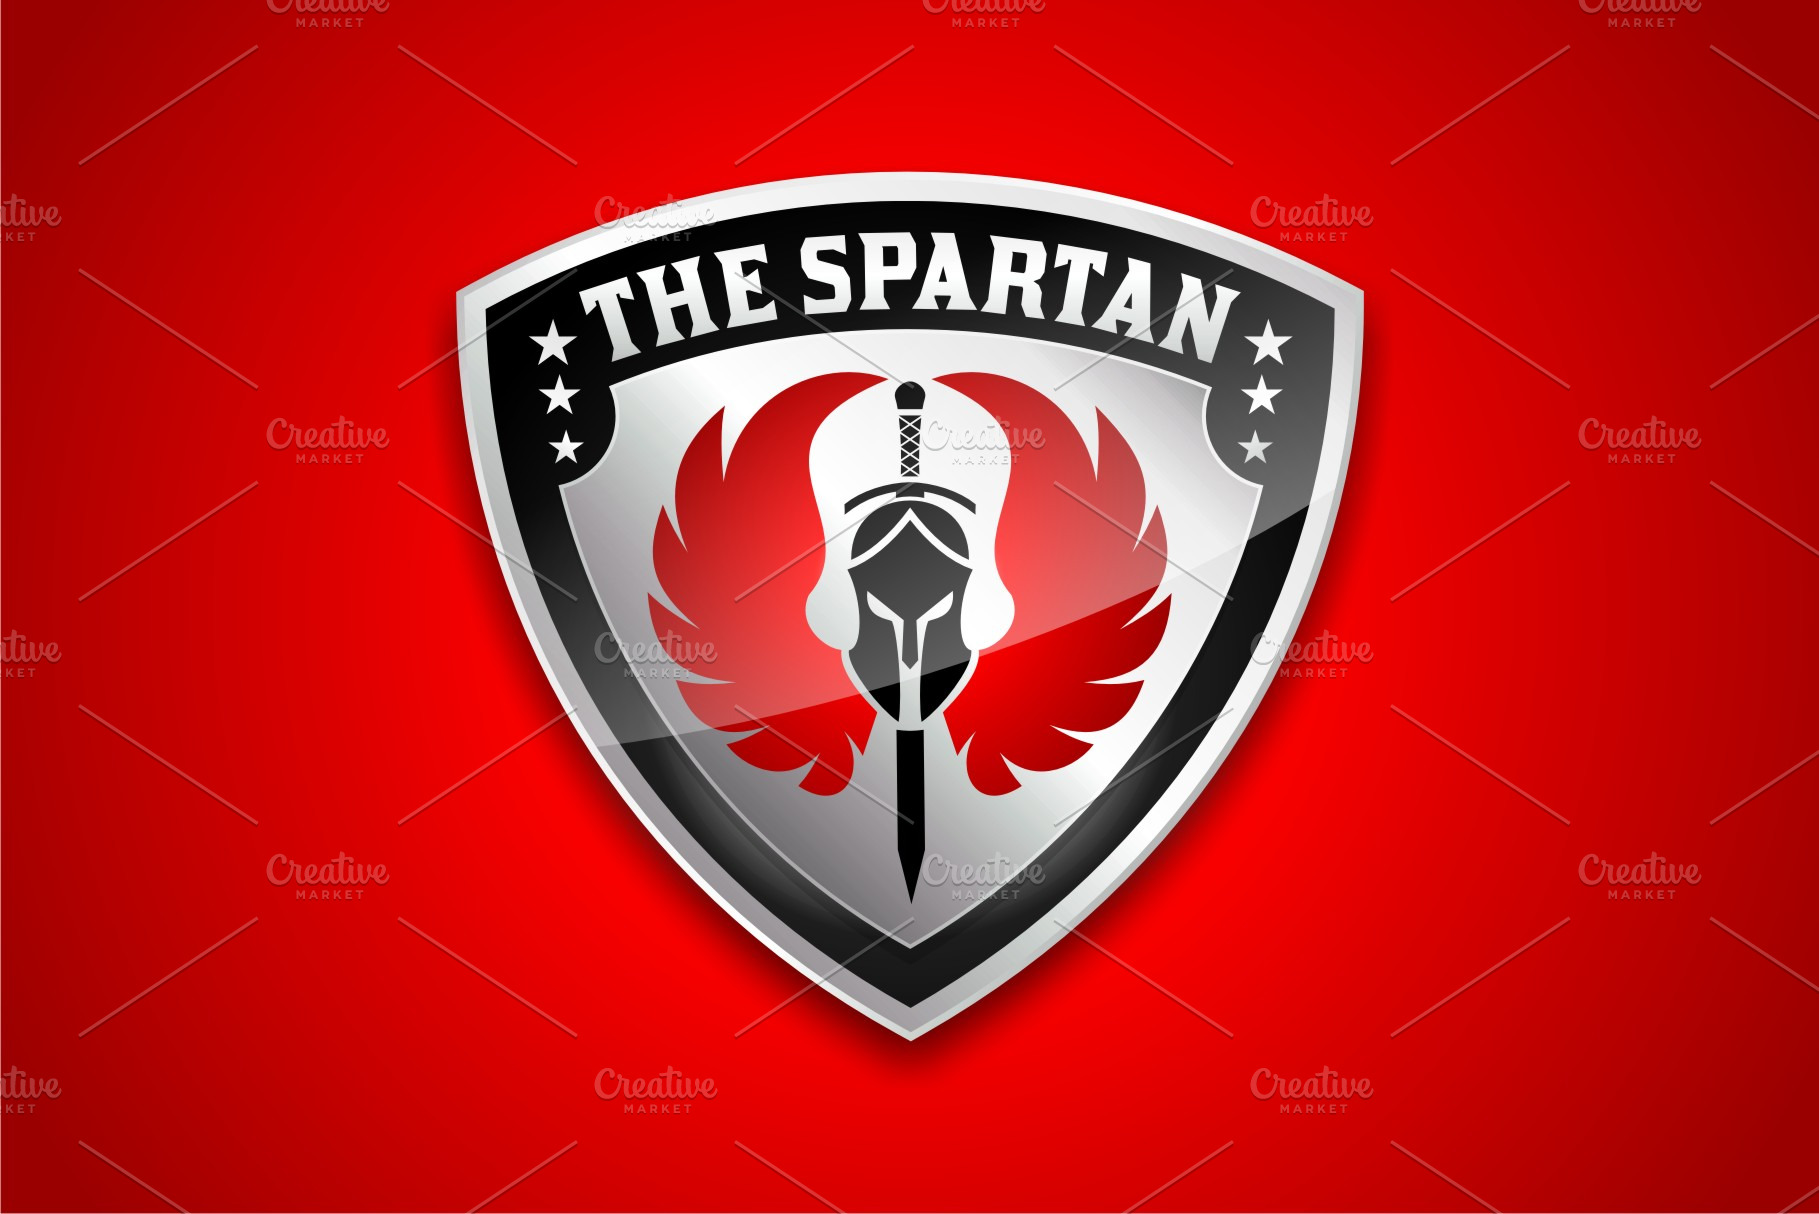 The Spartan Shield | Creative Logo Templates ~ Creative Market